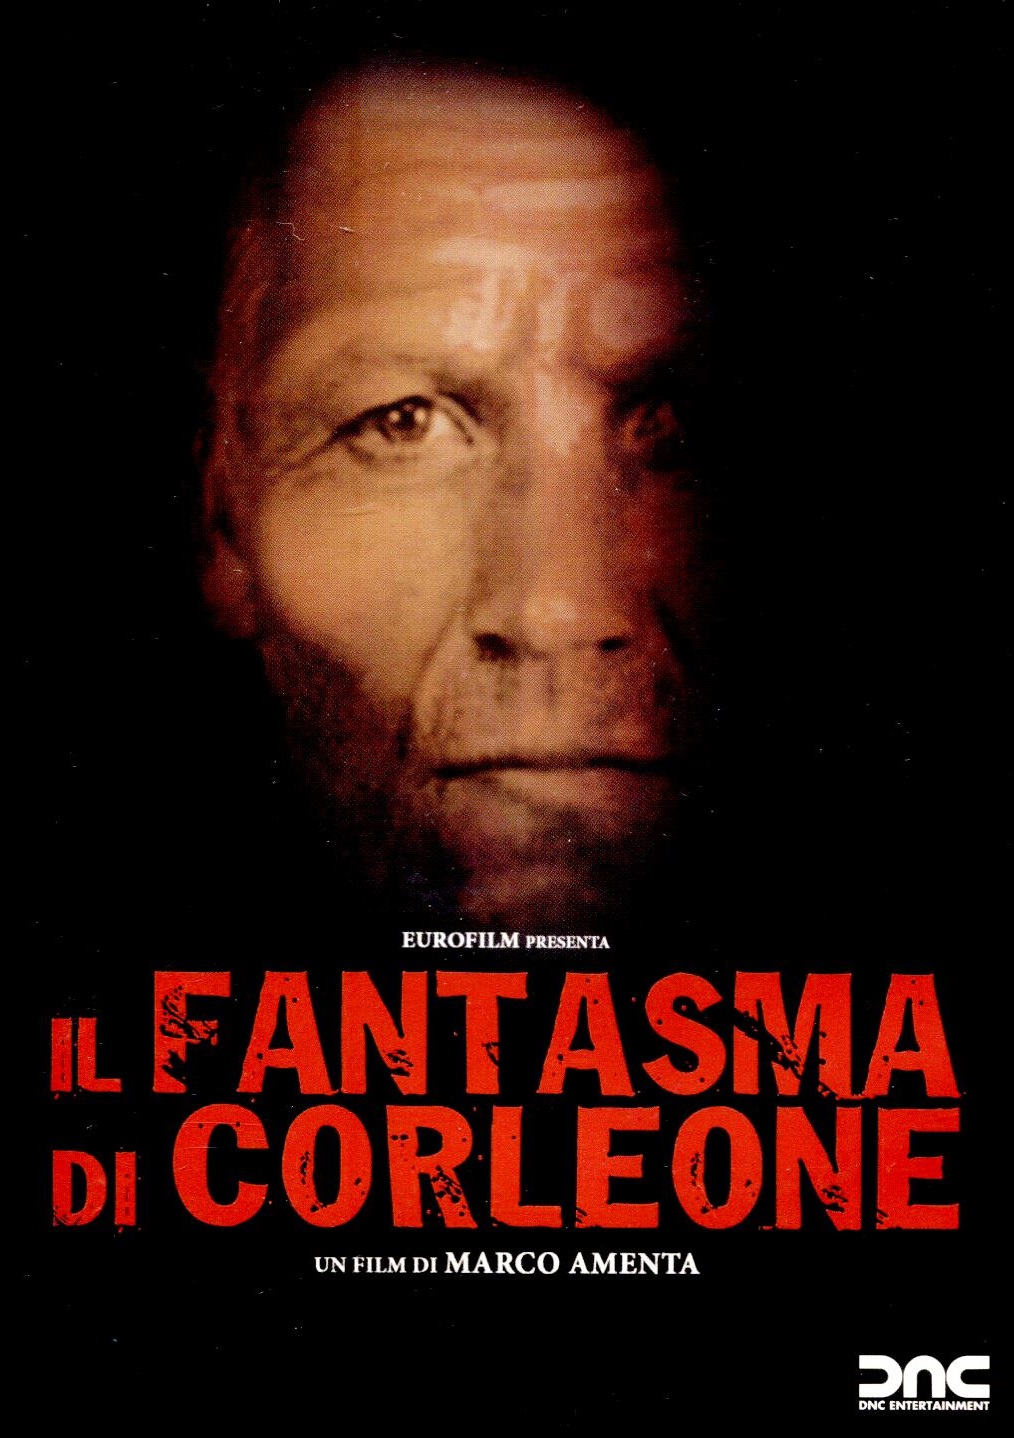 Il fantasma di Corleone (2006)